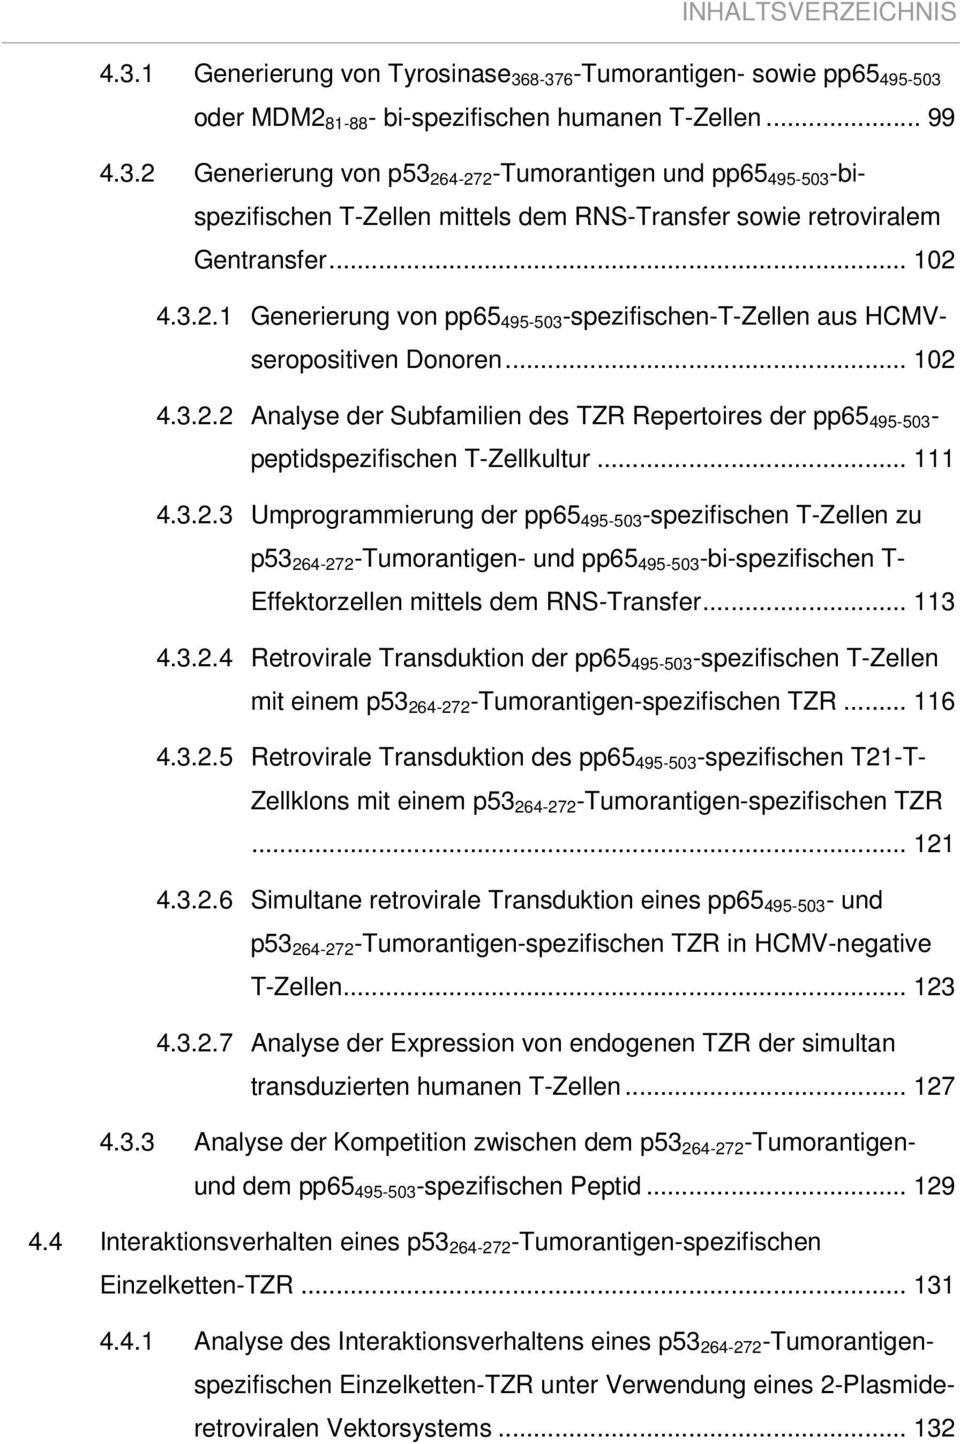 .. 111 4.3.2.3 Umprogrammierung der pp65 495-503 -spezifischen T-Zellen zu p53 264-272 -Tumorantigen- und pp65 495-503 -bi-spezifischen T- Effektorzellen mittels dem RNS-Transfer... 113 4.3.2.4 Retrovirale Transduktion der pp65 495-503 -spezifischen T-Zellen mit einem p53 264-272 -Tumorantigen-spezifischen TZR.